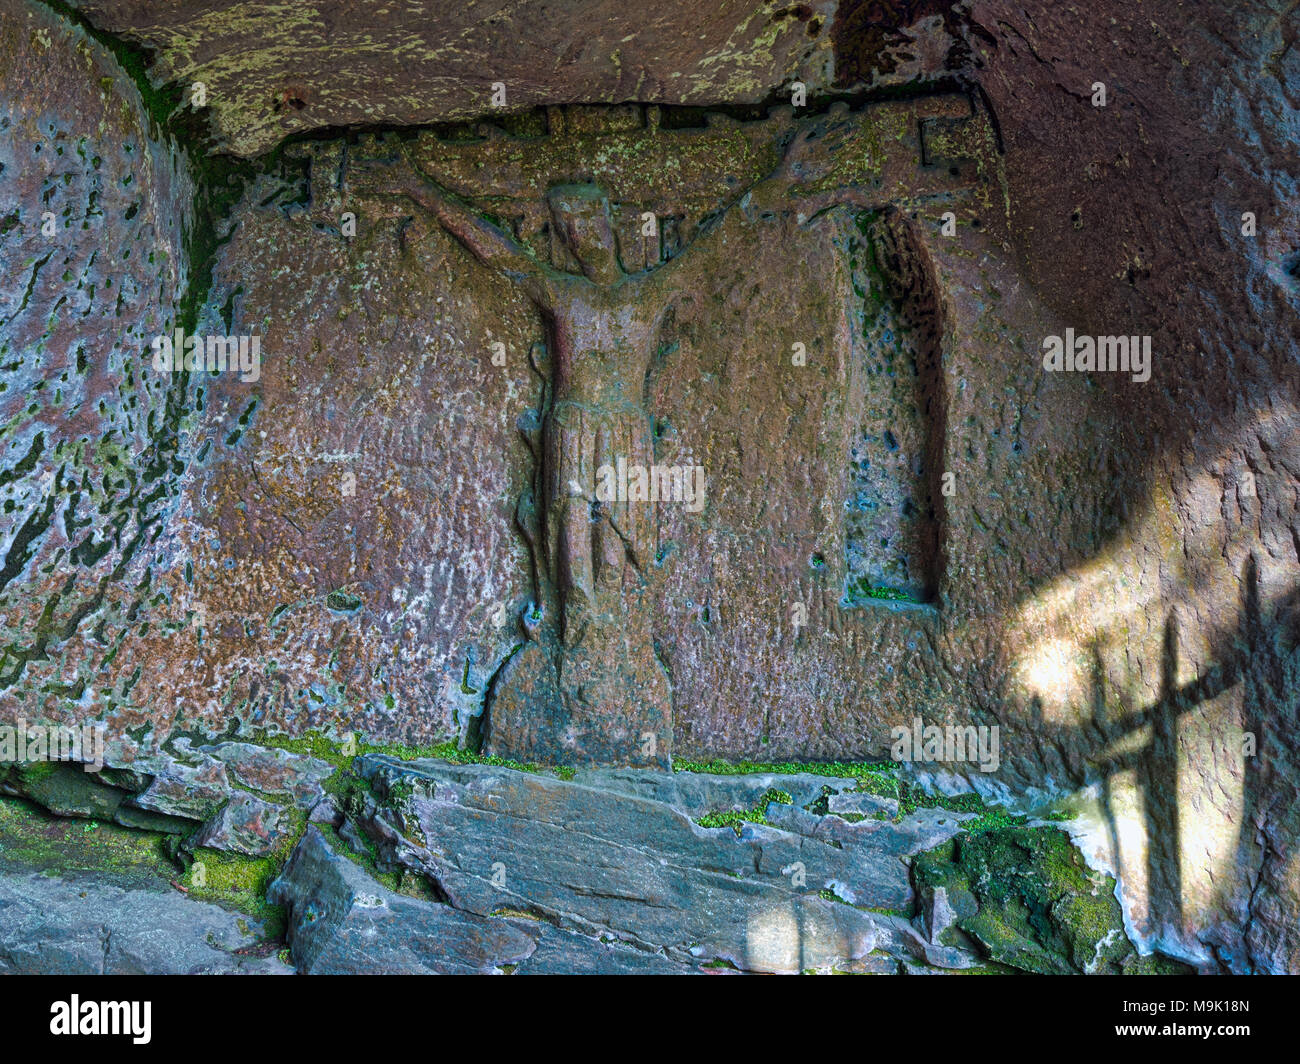 La grotte de l'Ermite du 14ème siècle à la base de Cratcliffe Rocks, près du village d'Elton, Derbyshire, dans un délai de quatre pieds de haut Jésus Christ Sculpté en pierre Banque D'Images